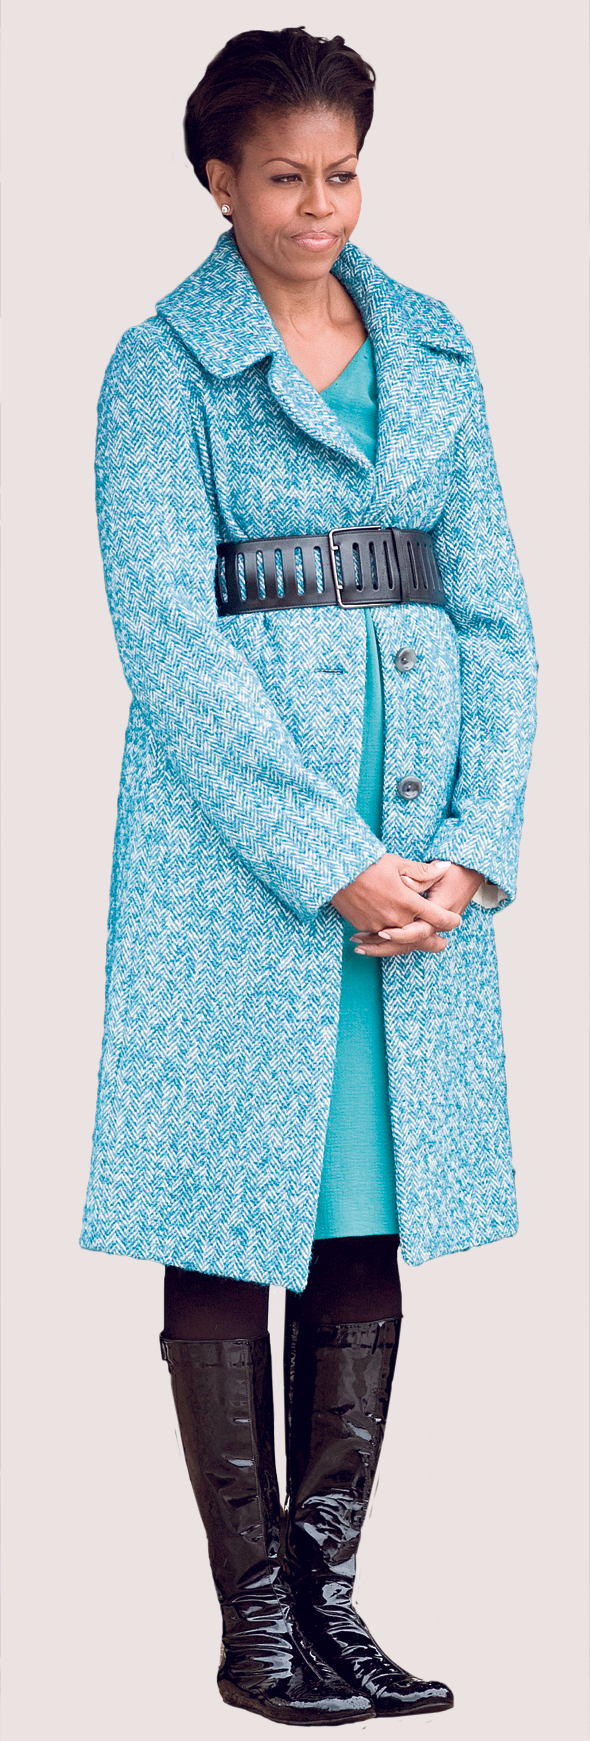 מישל אובמה במעיל של ג'יי קרו ב־2009. קידמה את המותג